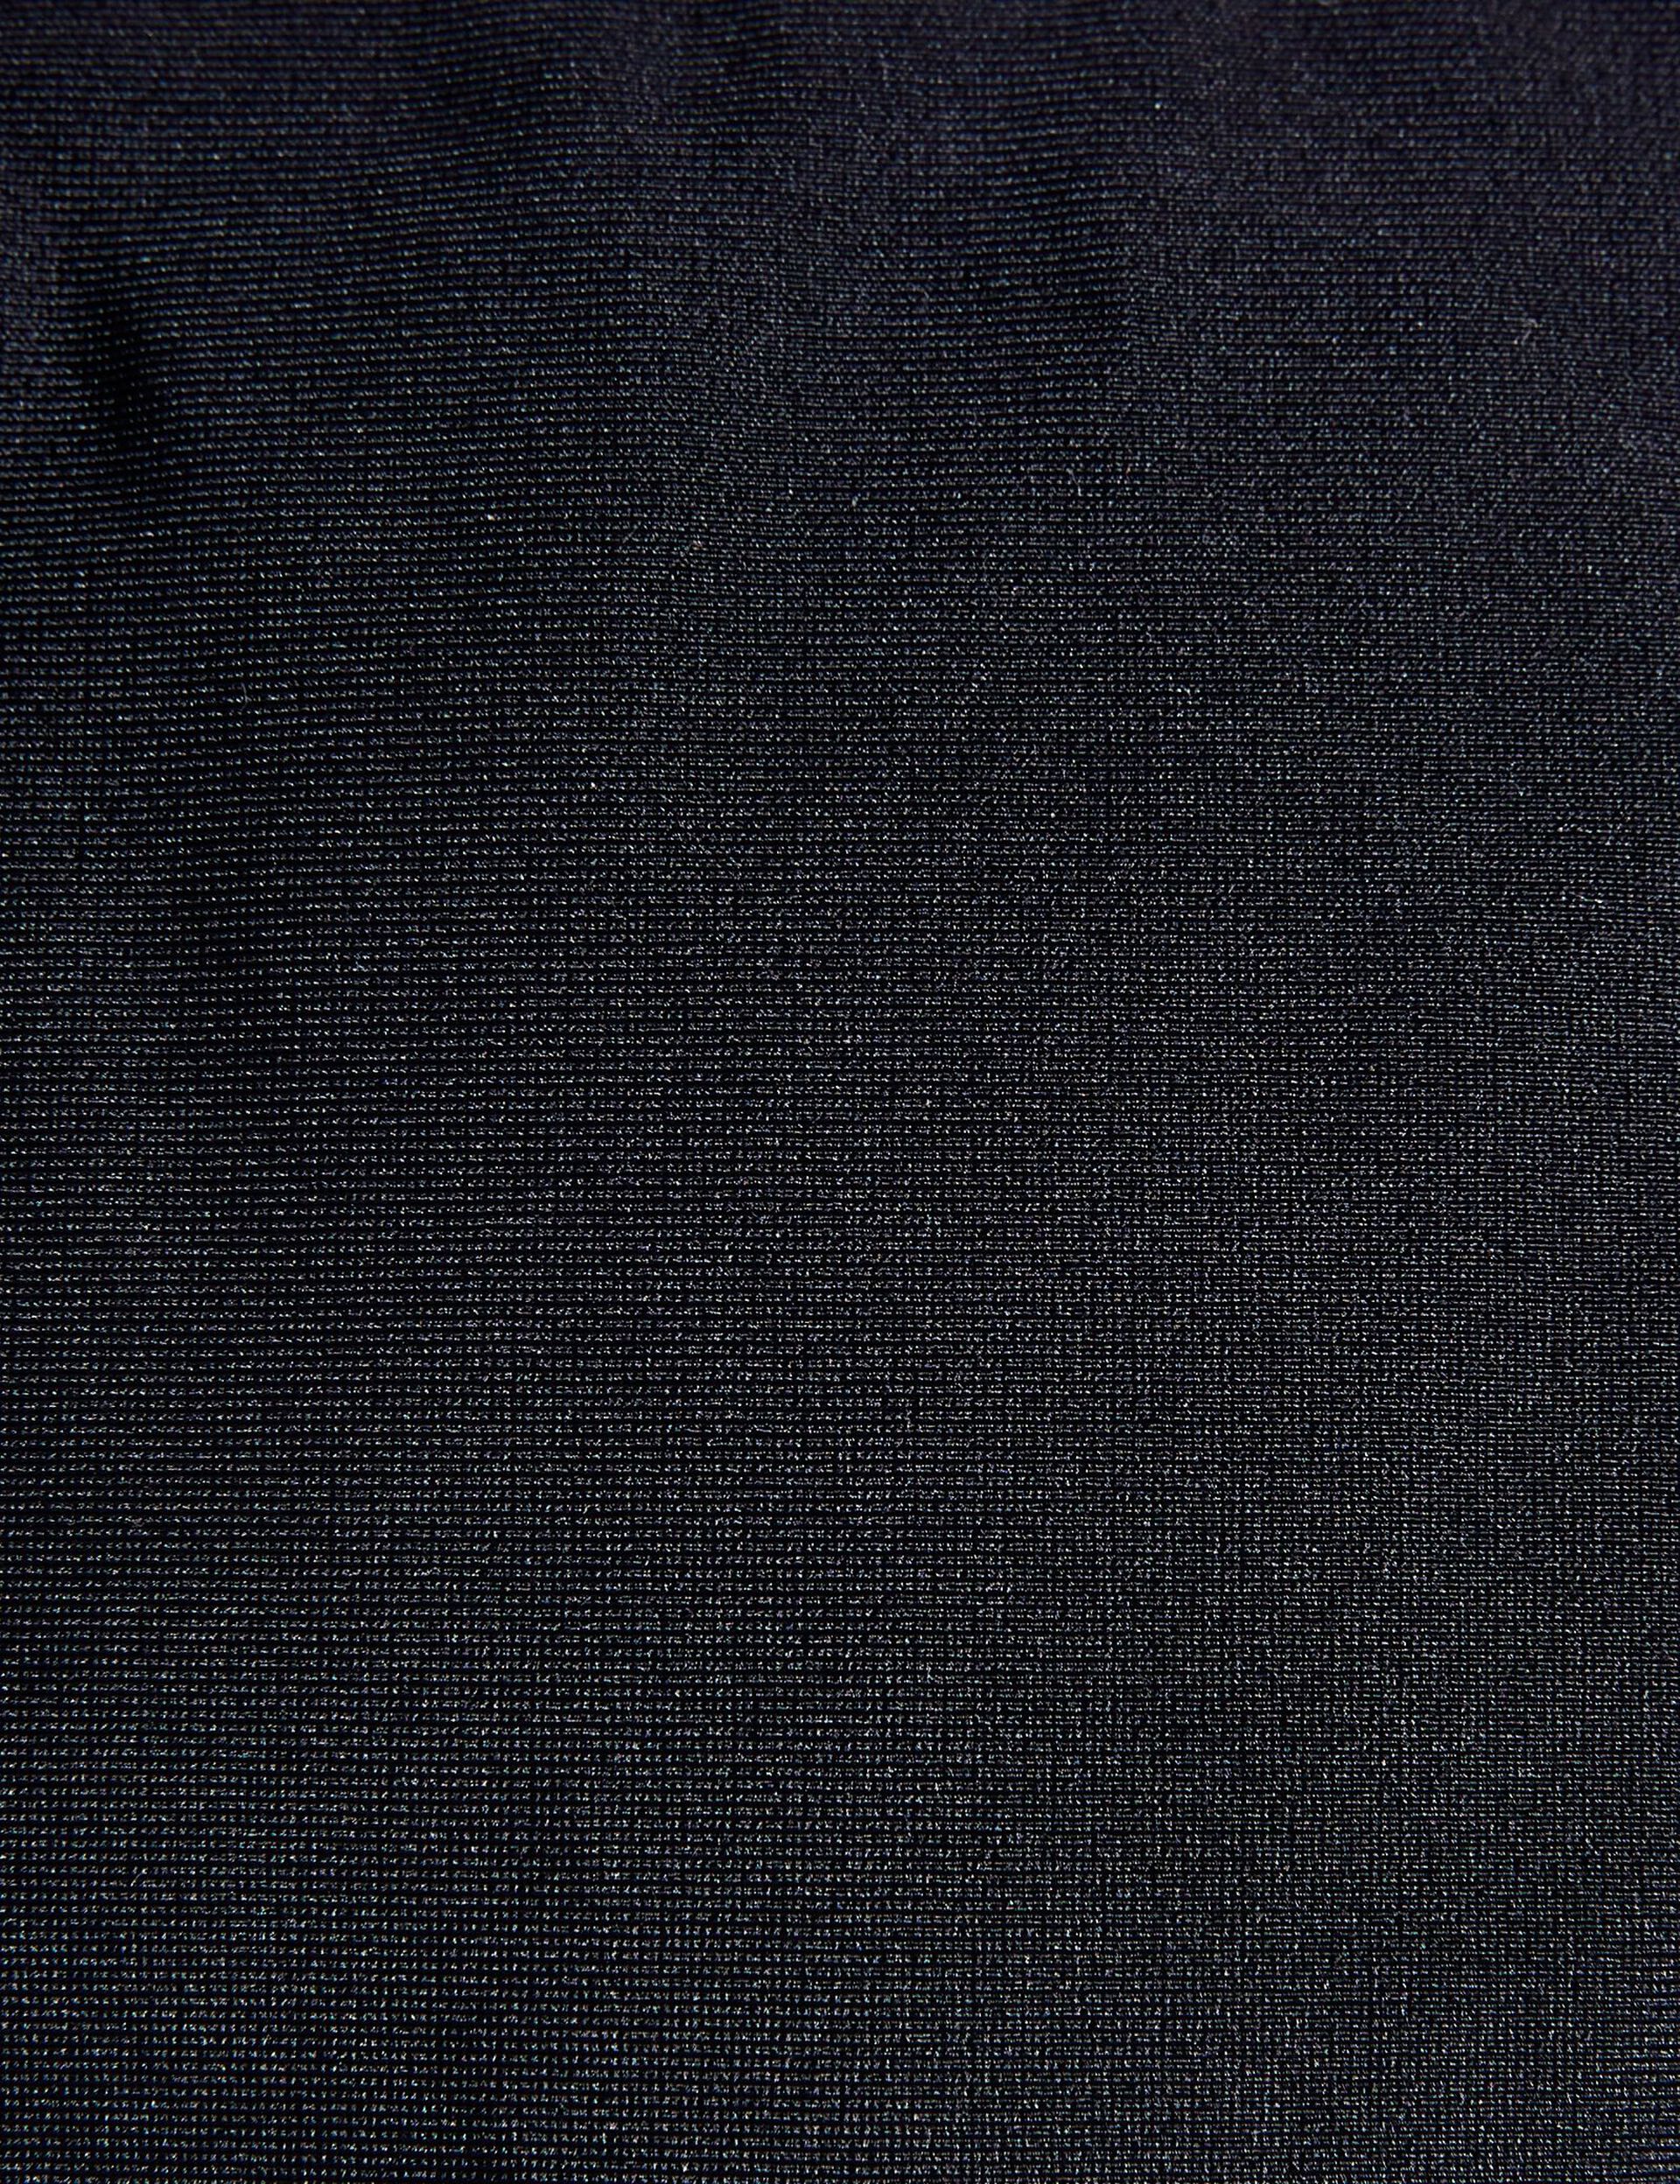 Haut de maillot de bain triangle noir avec anneau